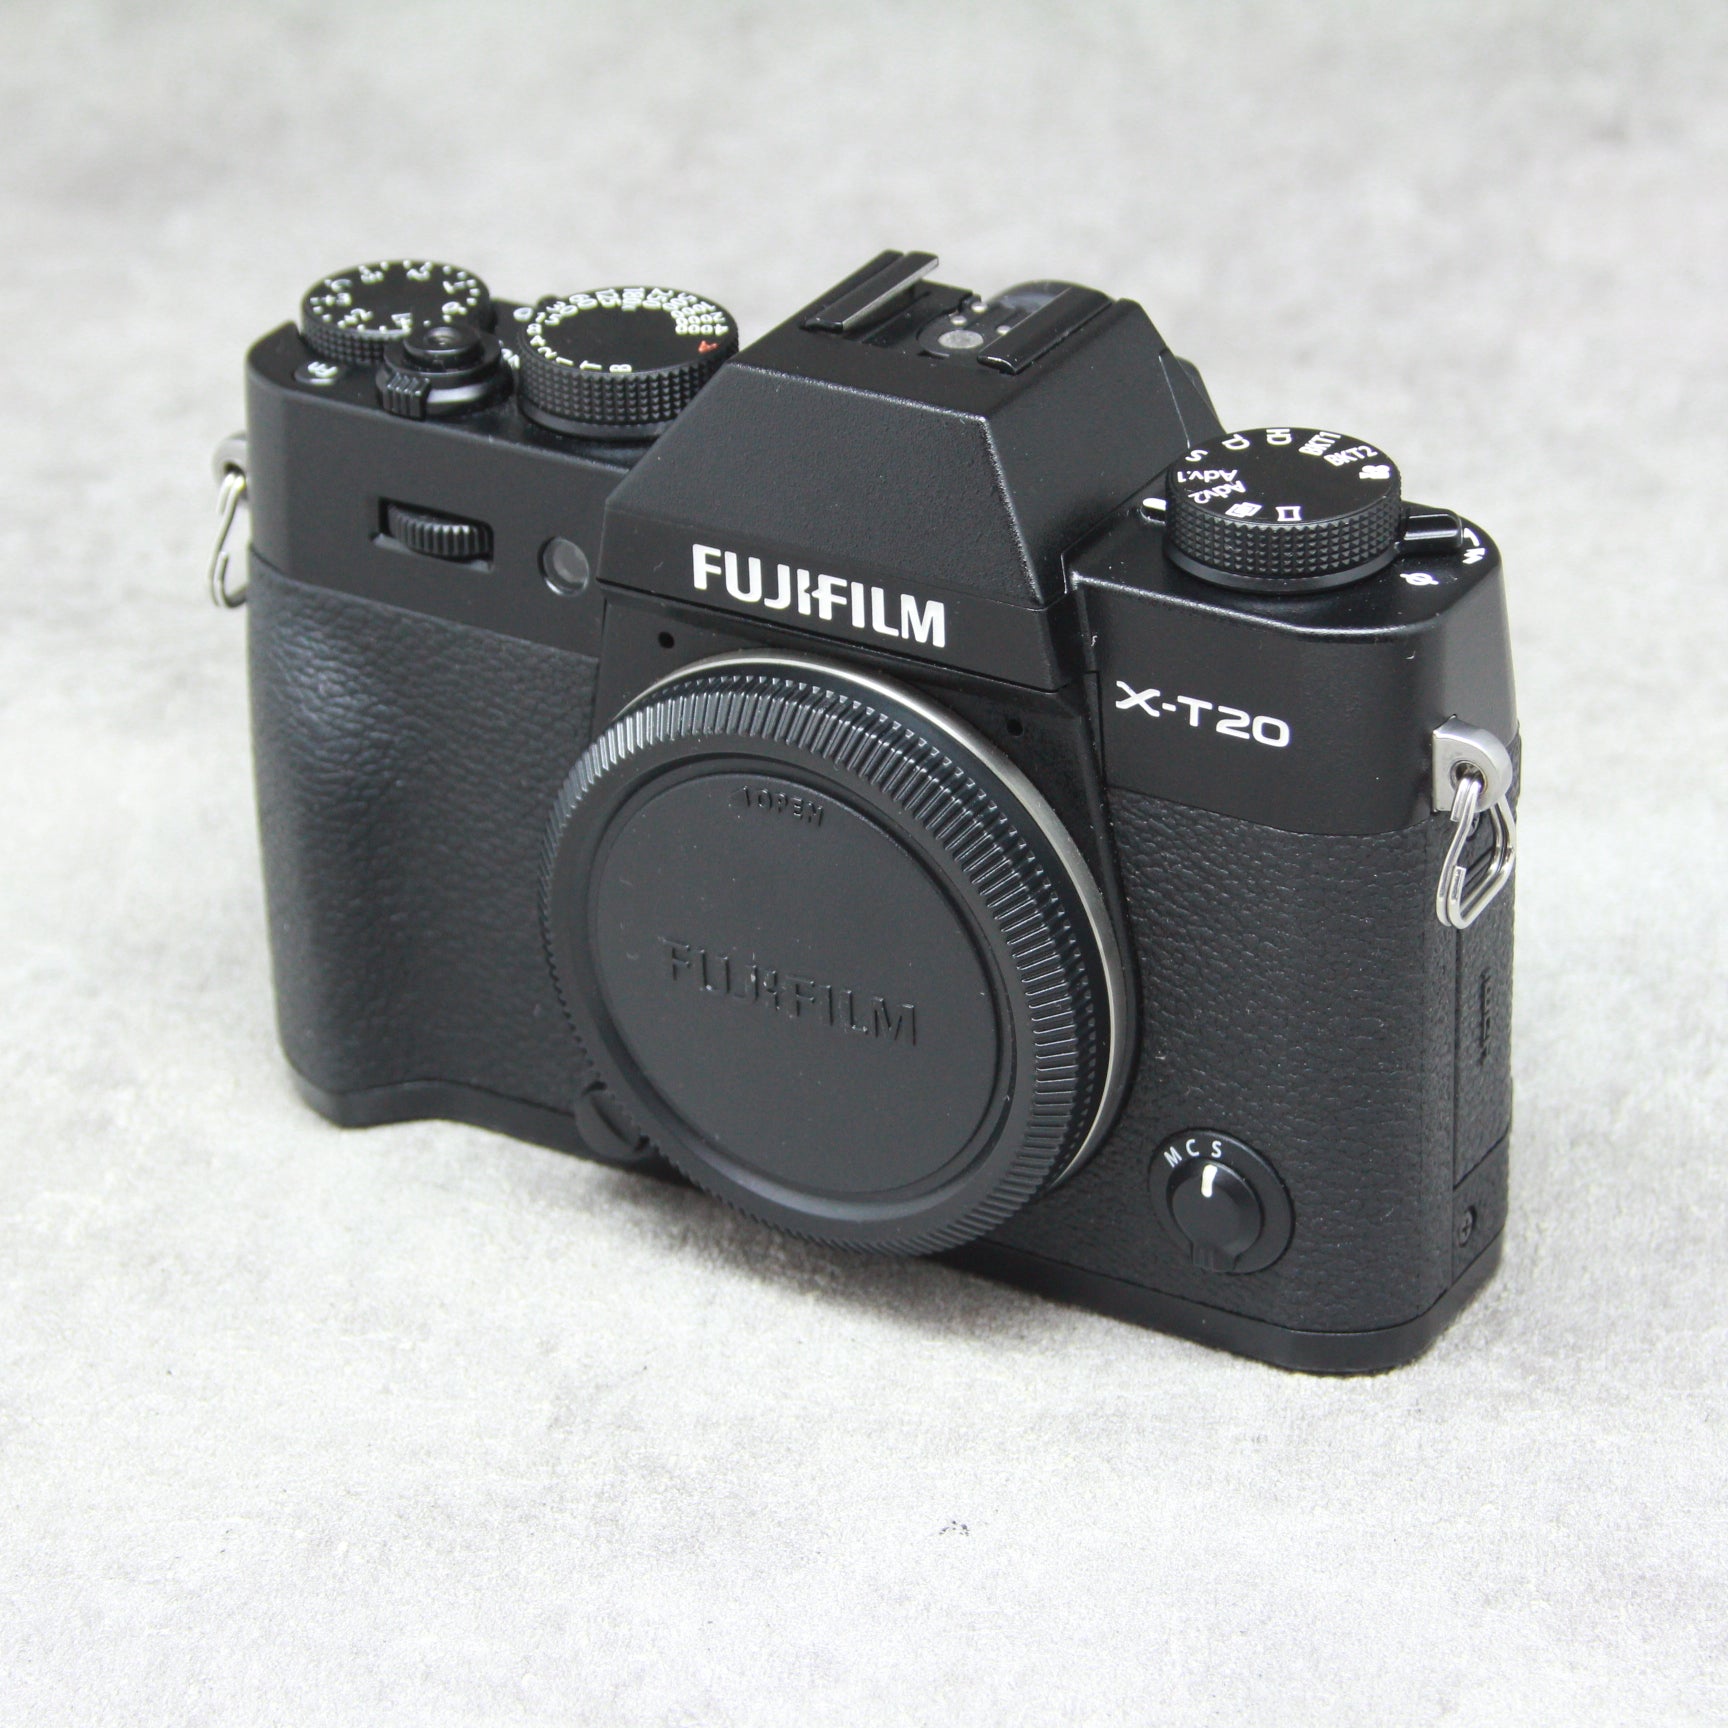 FUJIFIlM X-T20 ブラック ボディ-